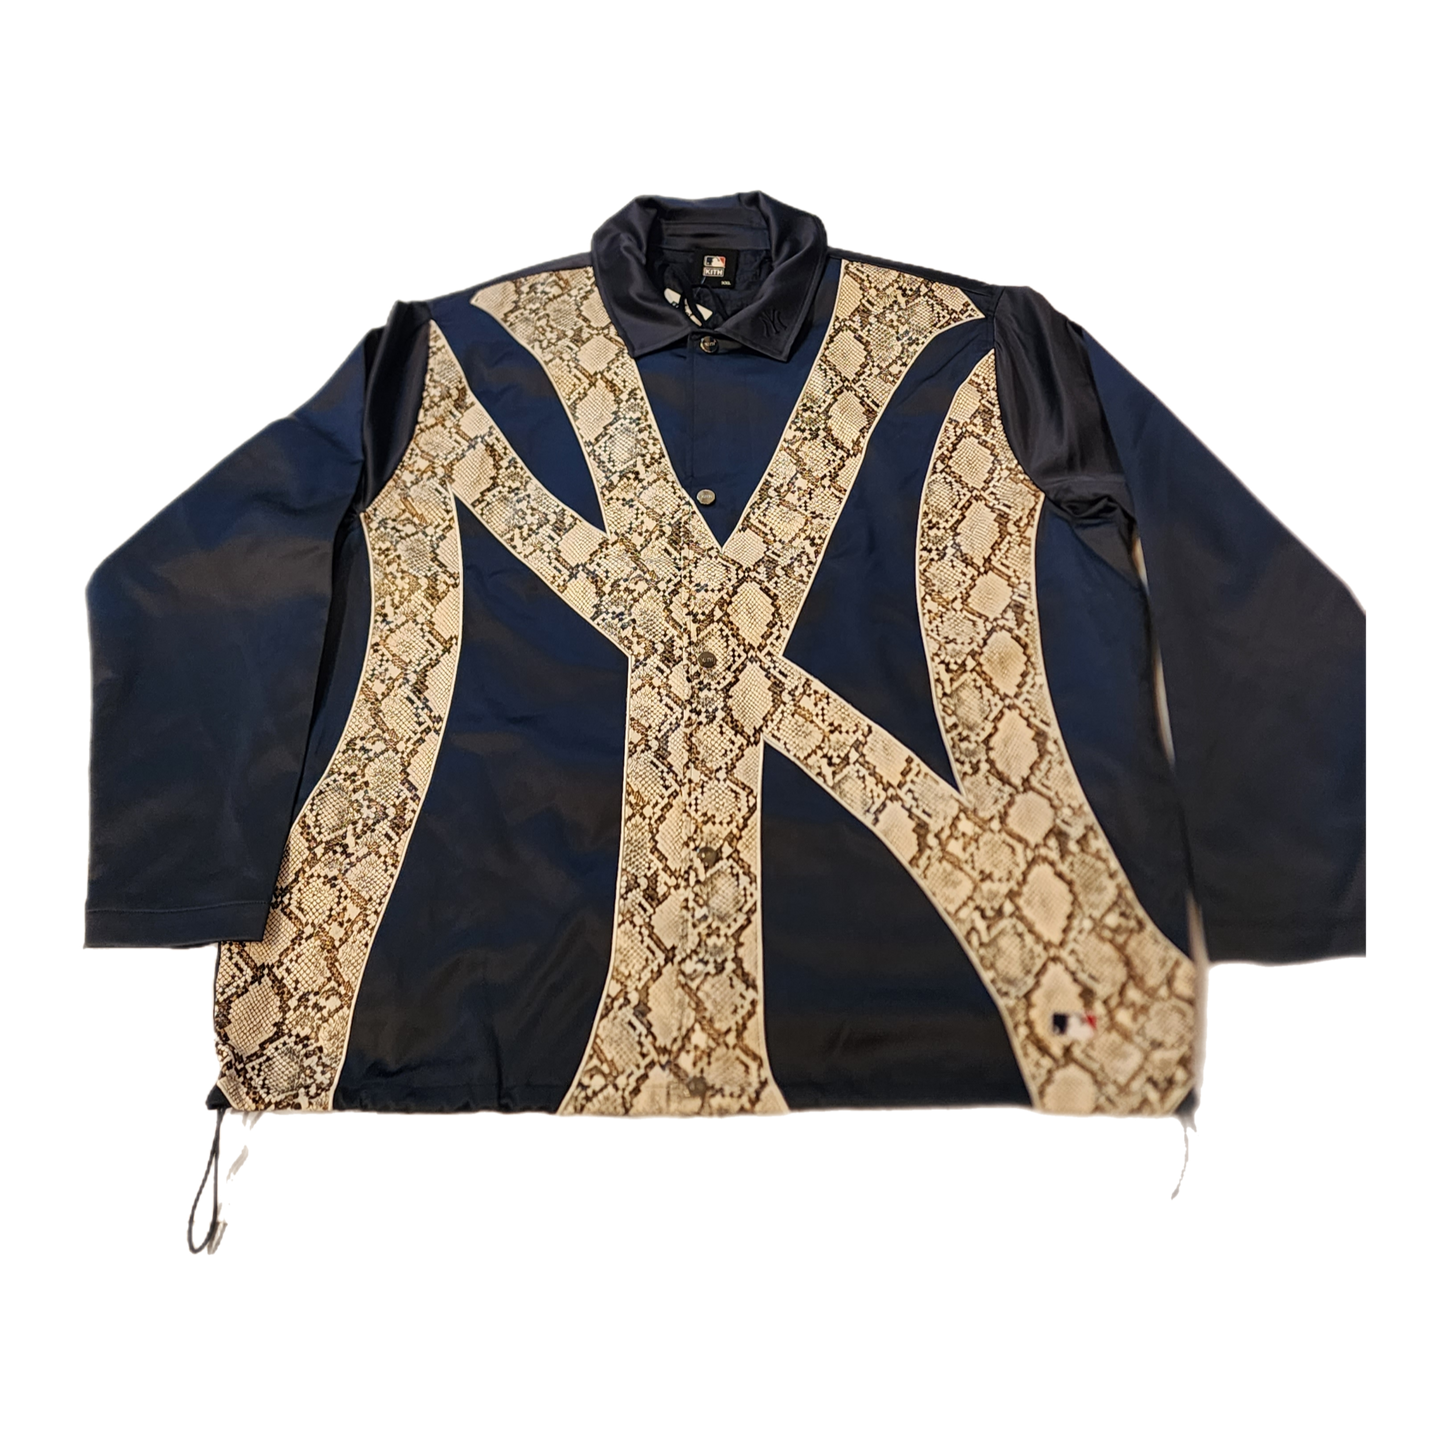 Kith -"New York Yankees Jacket"- Size XX-Large